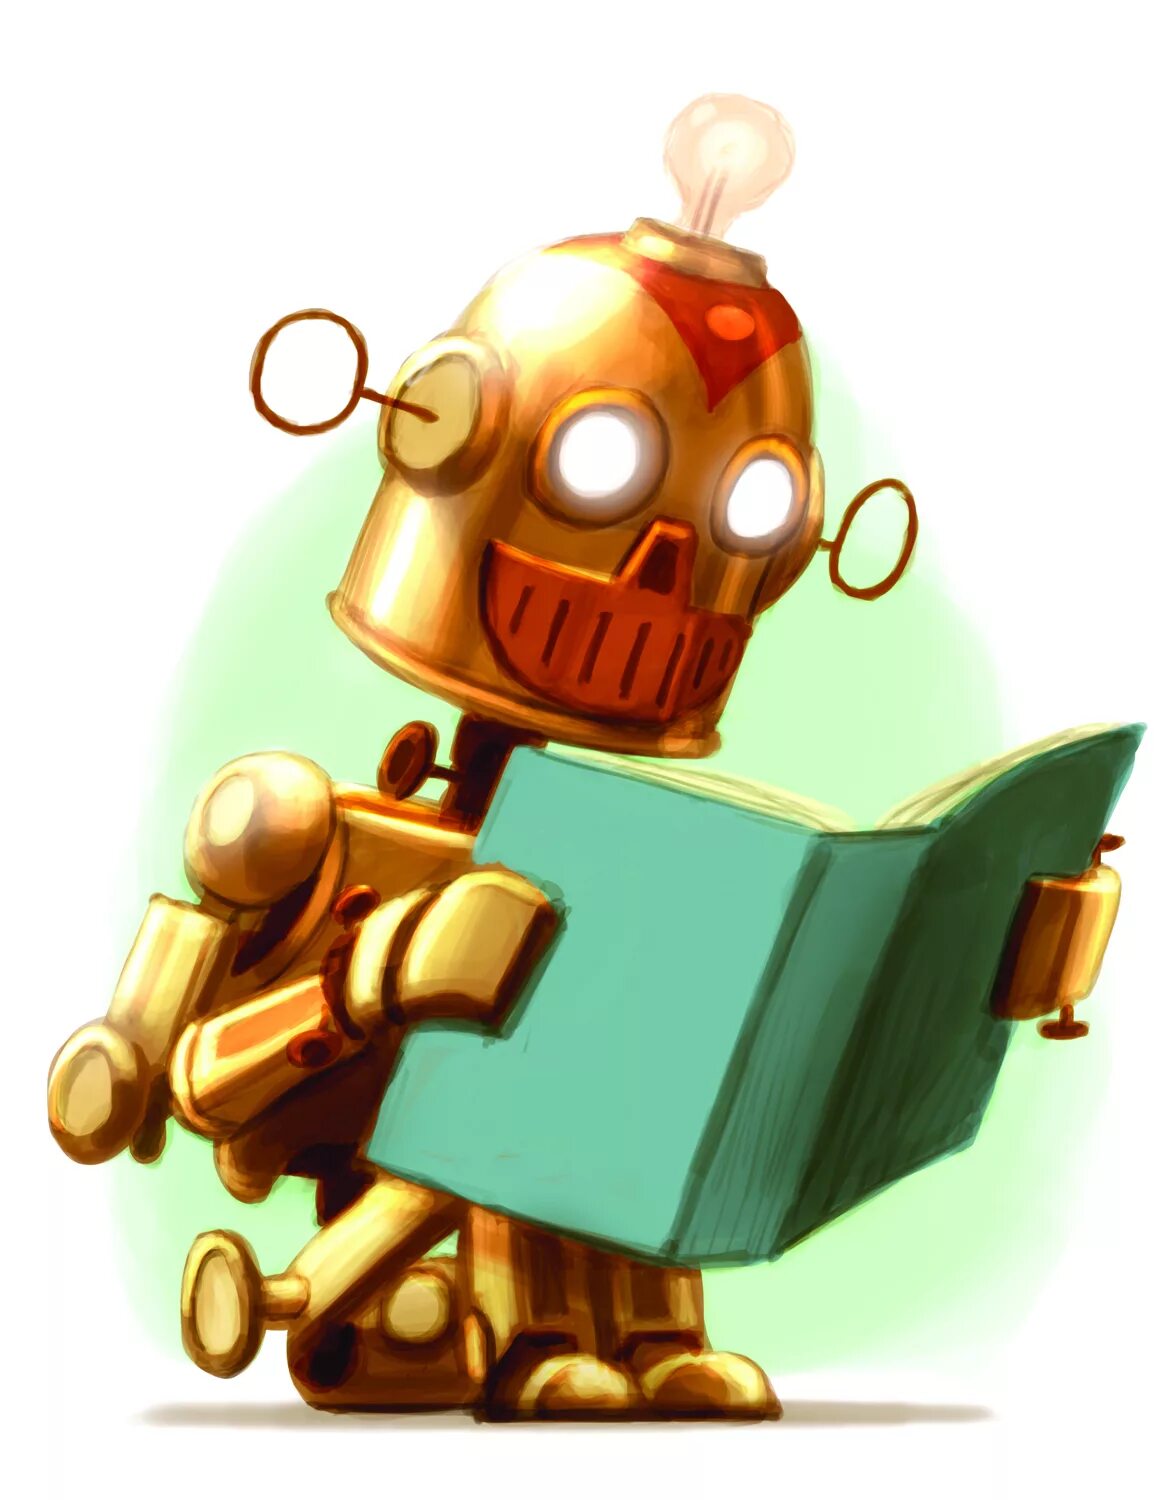 Читать про робота. Робот читает книгу. Робот читает книгу иллюстрации. Читай робота. Robot reading.